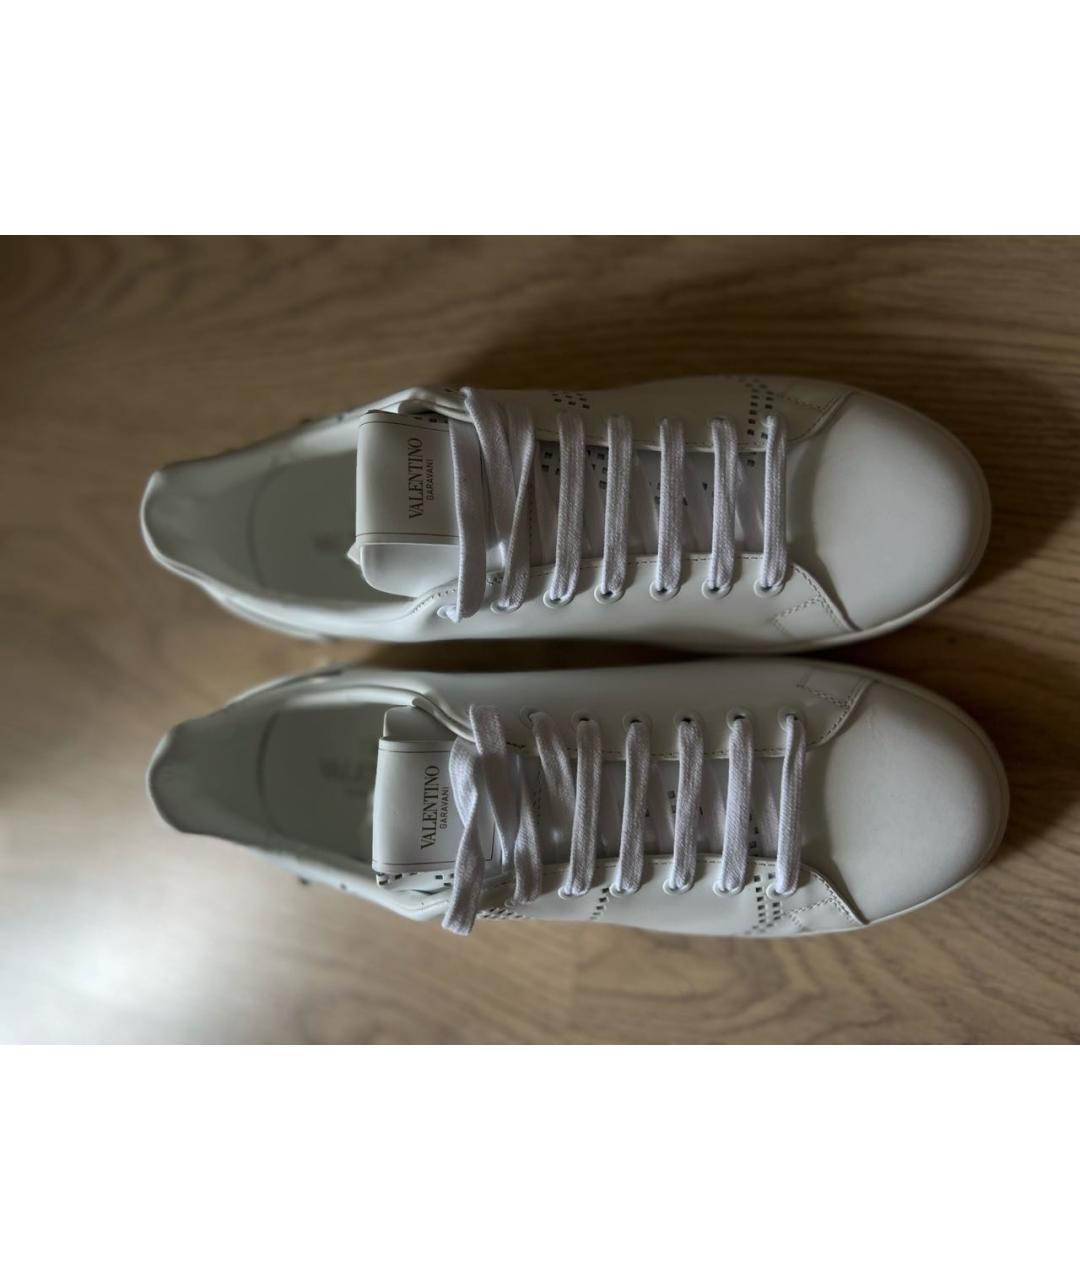 VALENTINO Белые кожаные низкие кроссовки / кеды, фото 2